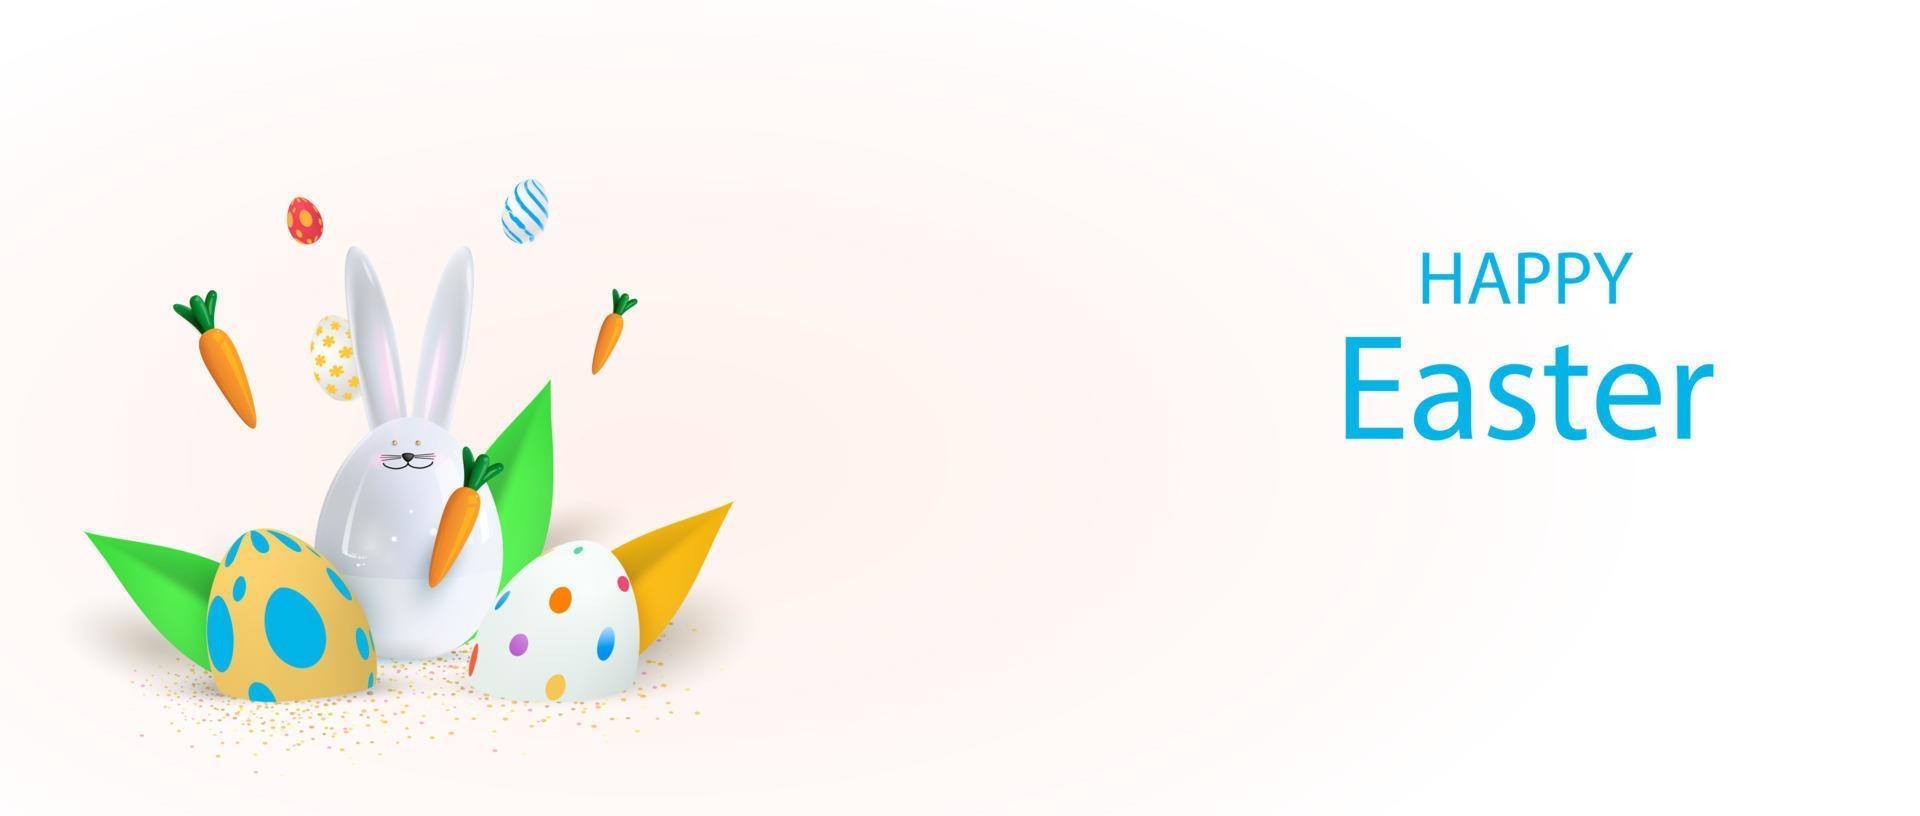 gelukkige paasvakantie achtergrond. feestelijk ontwerp met realistisch 3D-konijntje en decoratieve elementen. lente bladeren en eieren. vliegende wortel. vector